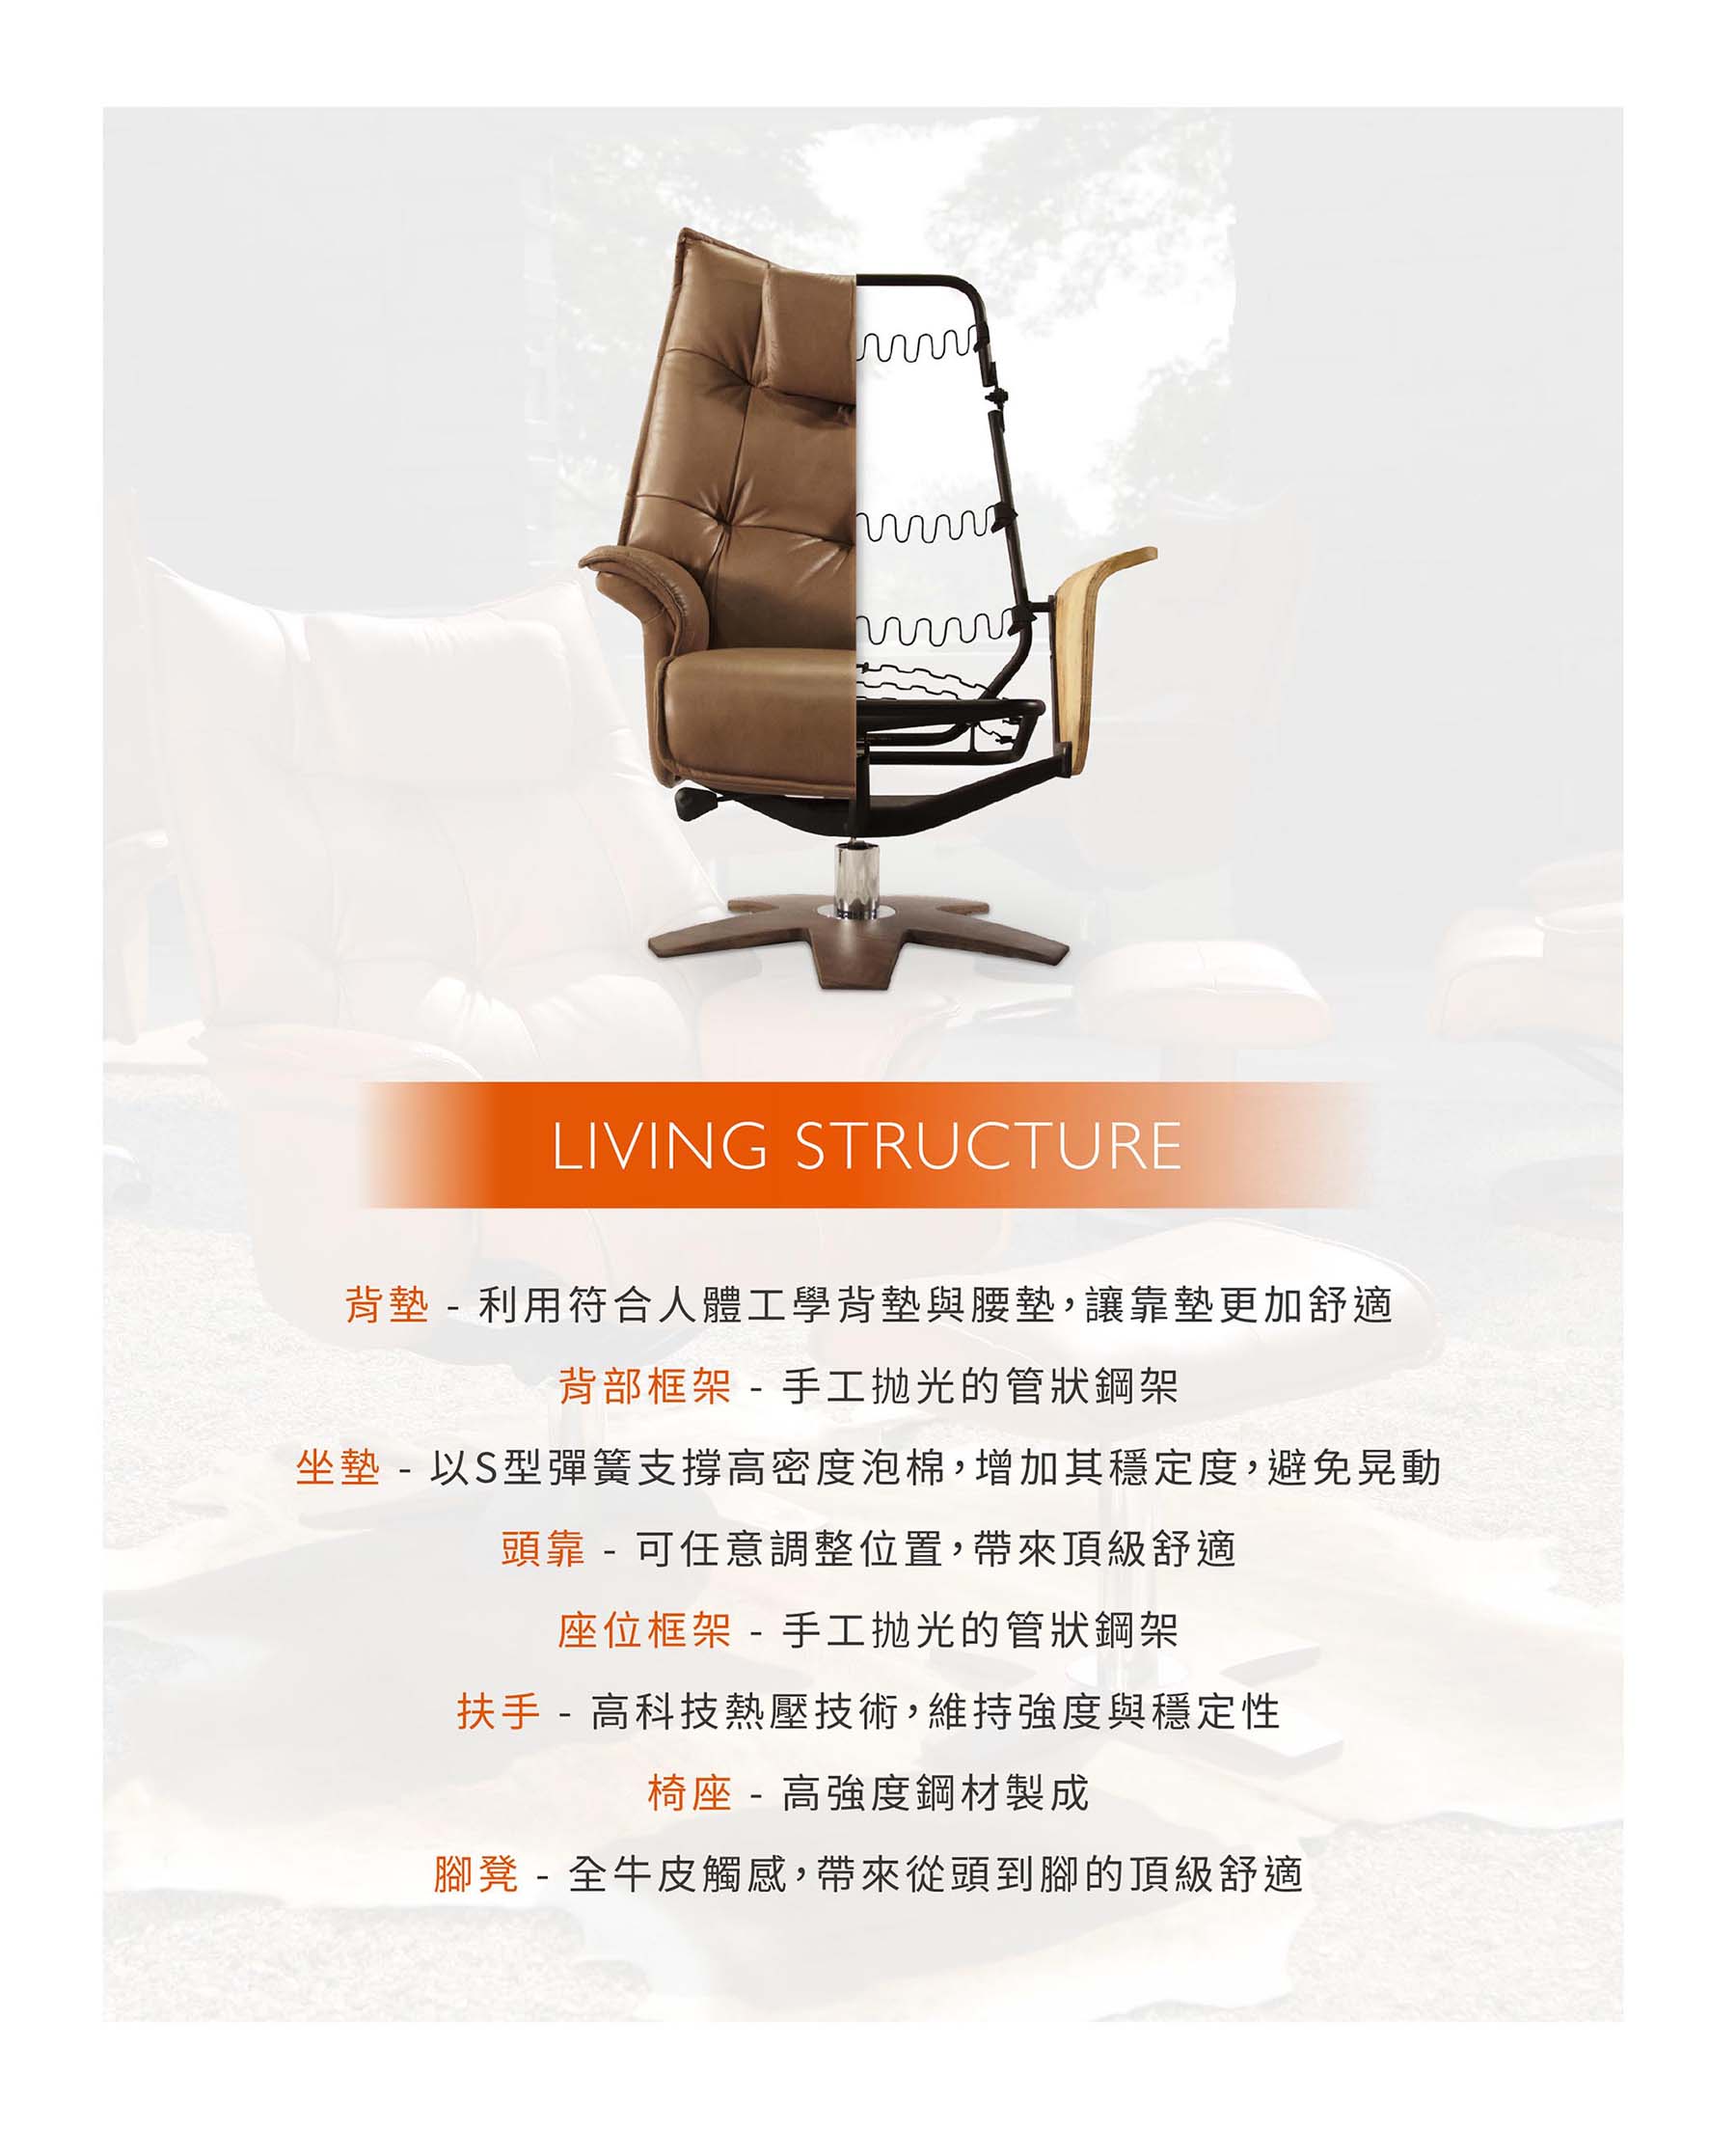 全能休閒椅Function Chair|Viva|睡眠王國集團